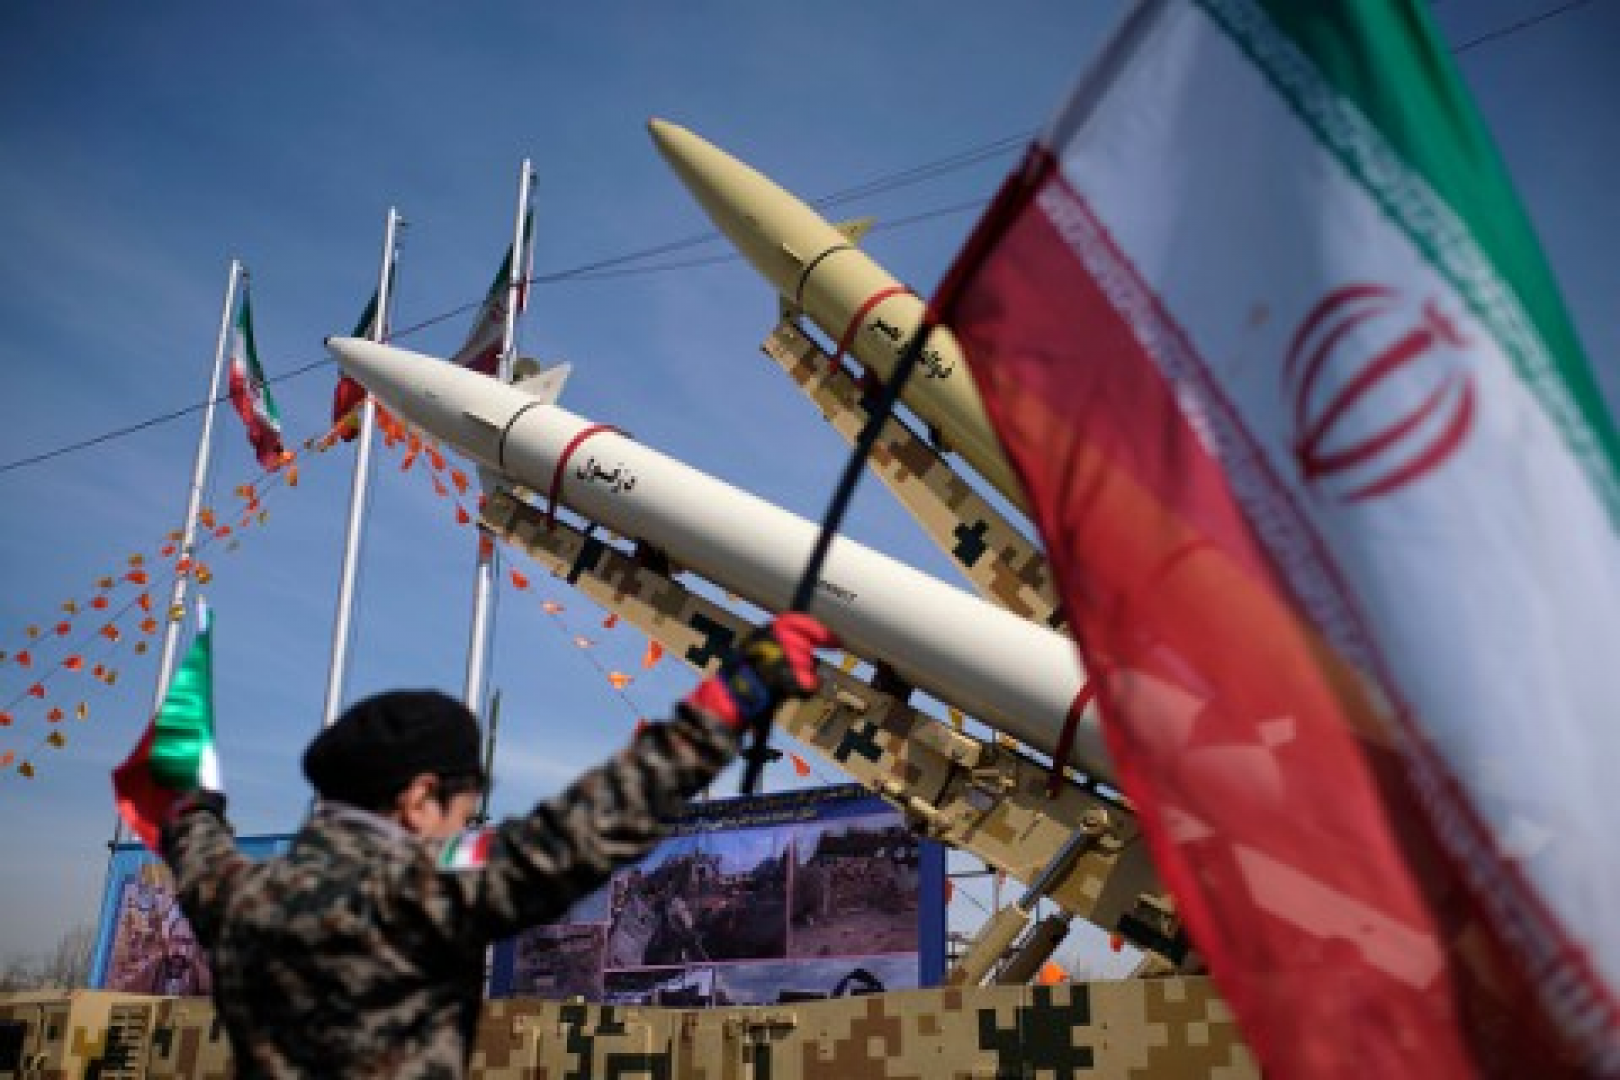 جديد الصناعة الحربية الايرانية, صاروخ بالستي فرط صوتي سيزاح الستار عنه.